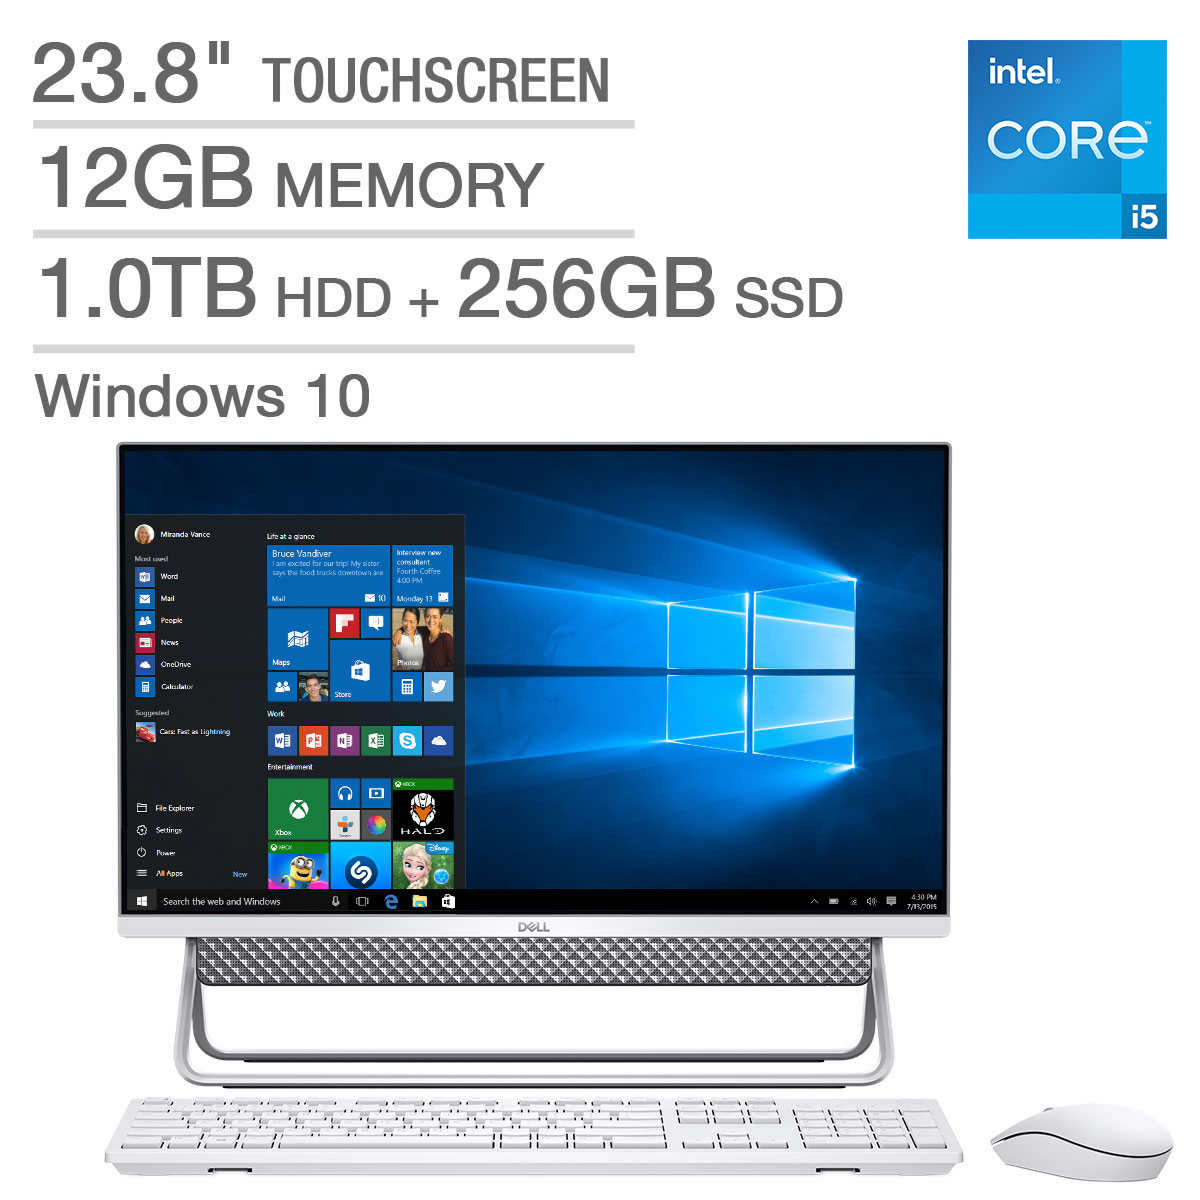 Dell Inspiron 24 5000 Series Touchscreen All In One Desktop 11th Gen Intel Core I5 1135g7 1080p Costco